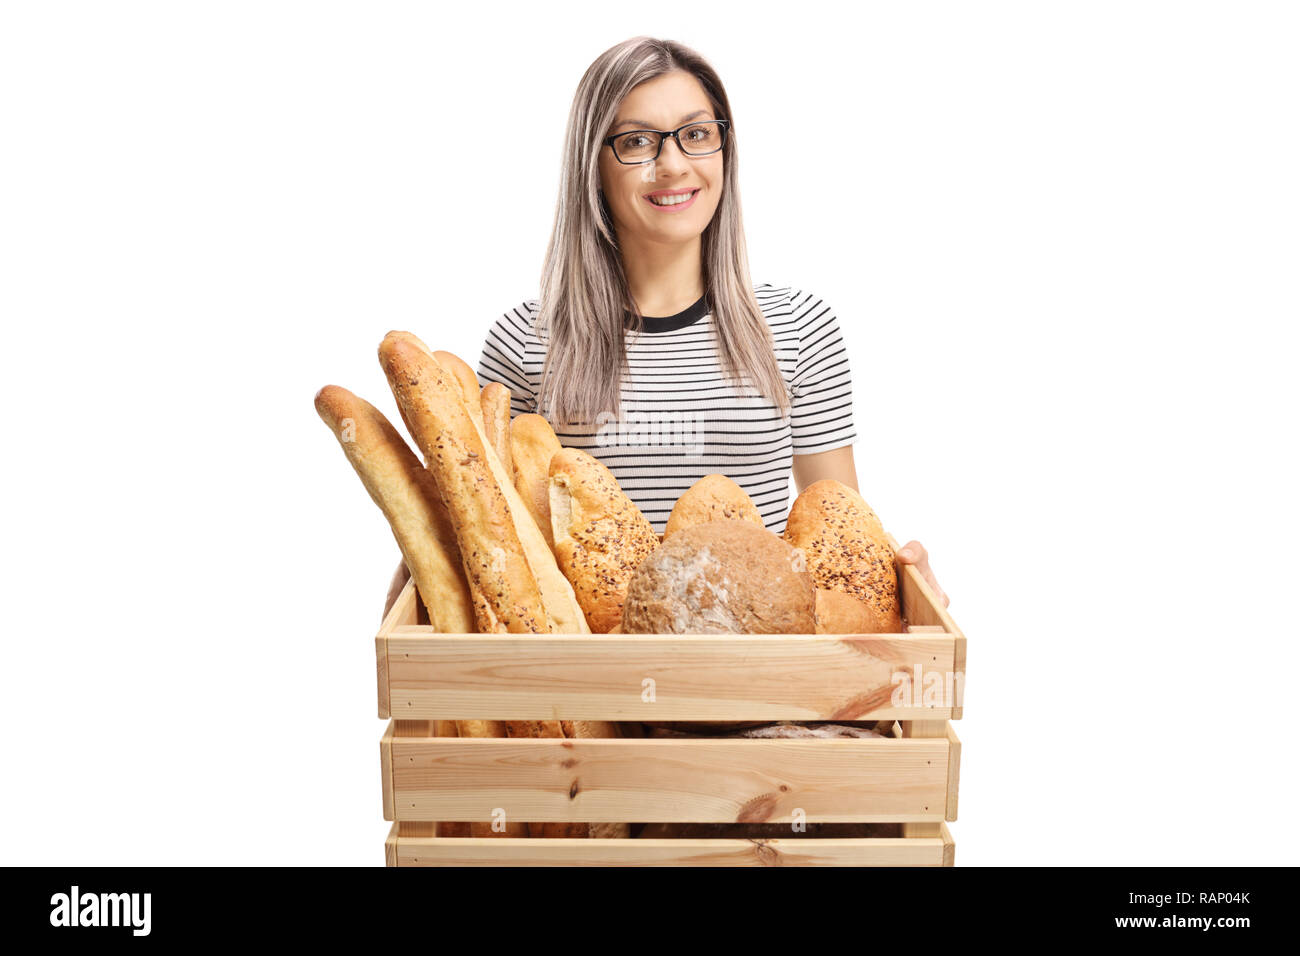 Lächelnde junge Frau mit einer Kiste voller Brot Laibe auf weißem Hintergrund Stockfoto